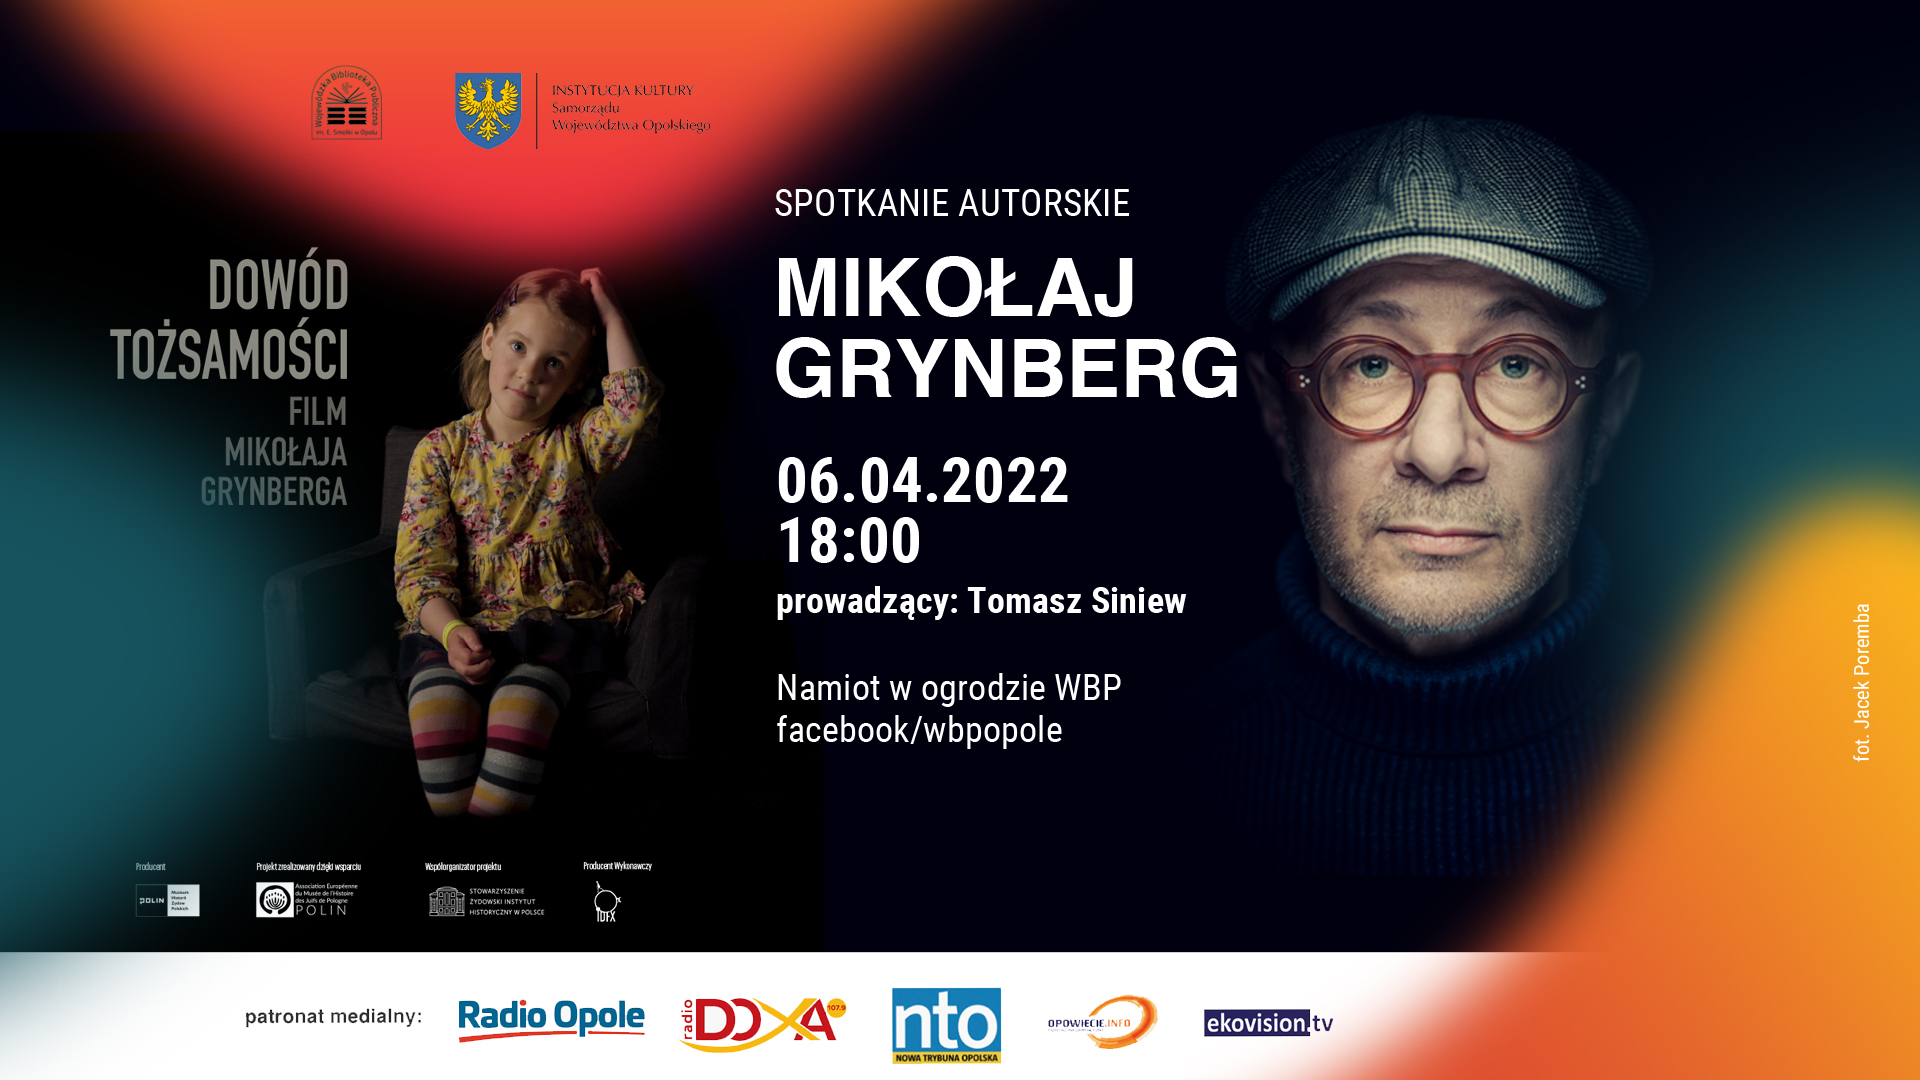 Pokaz filmu 'Dowód tożsamości' i spotkanie z Mikołajem Grynbergiem w WBP w Opolu już w środę! [fot. materiały organizatora]